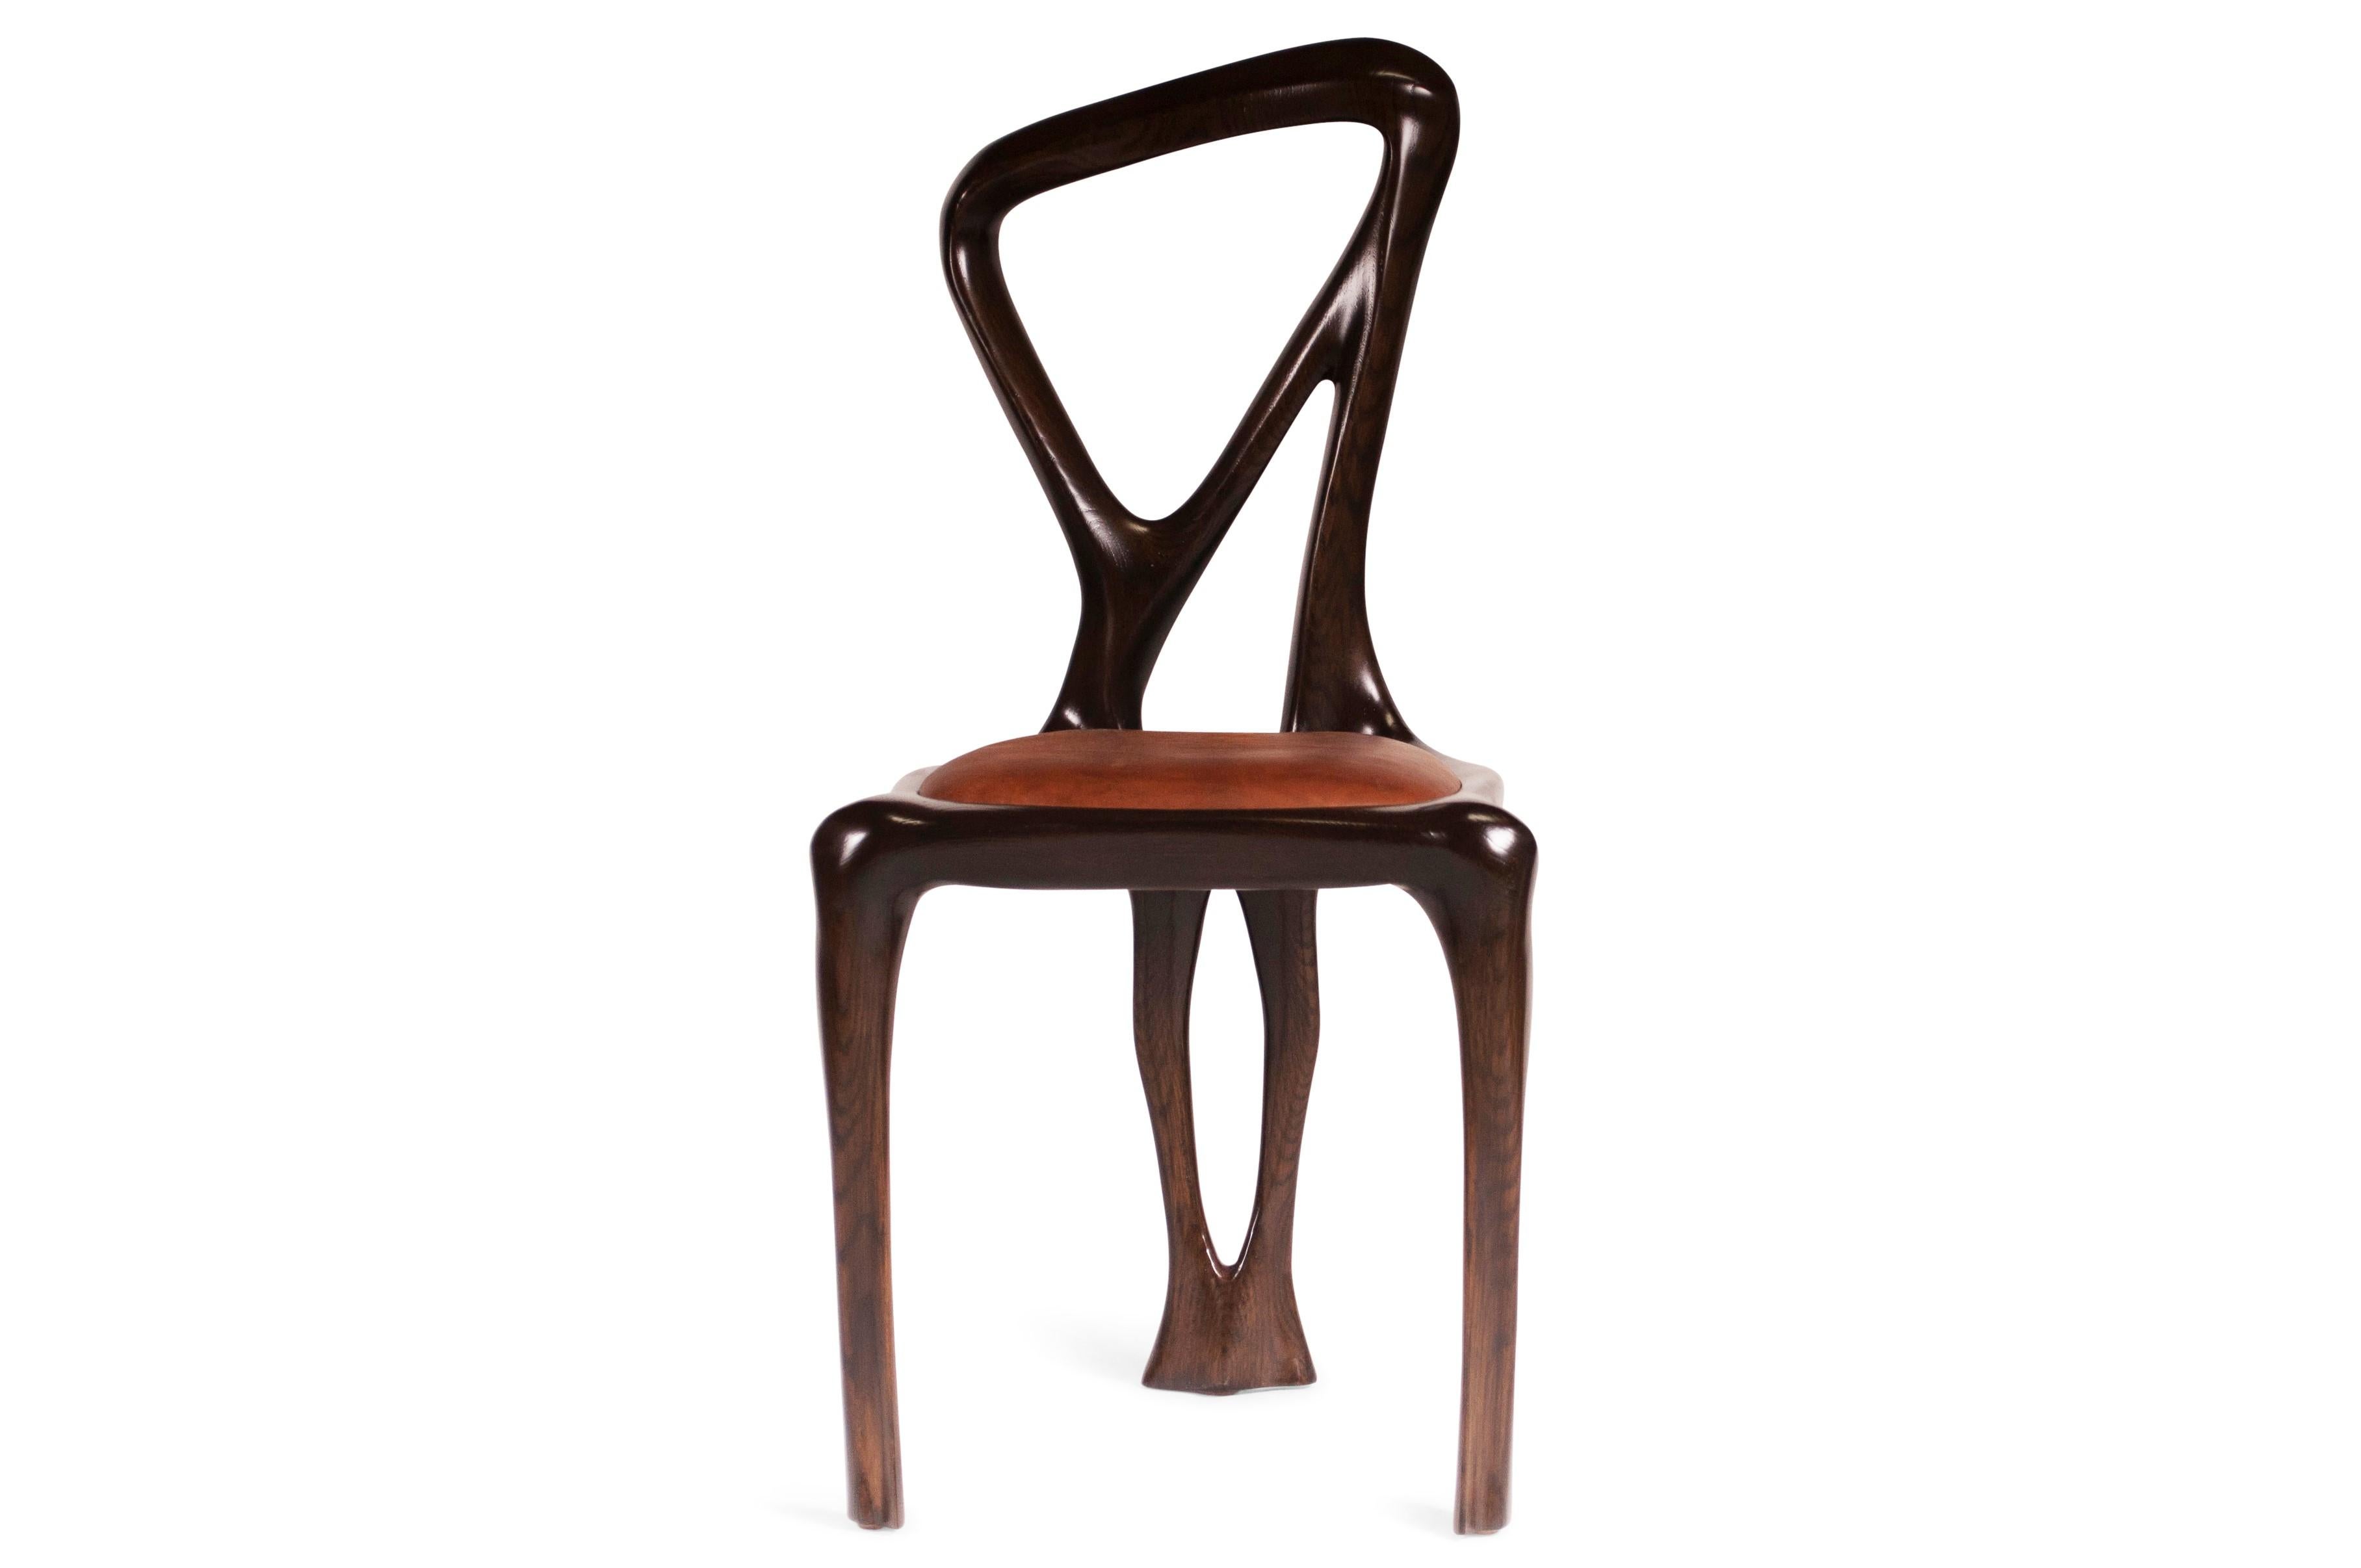 Chaise de salle à manger conçue par Amorph en bois de frêne massif et cuir. Il est teinté noyer foncé.
Dimension : 38